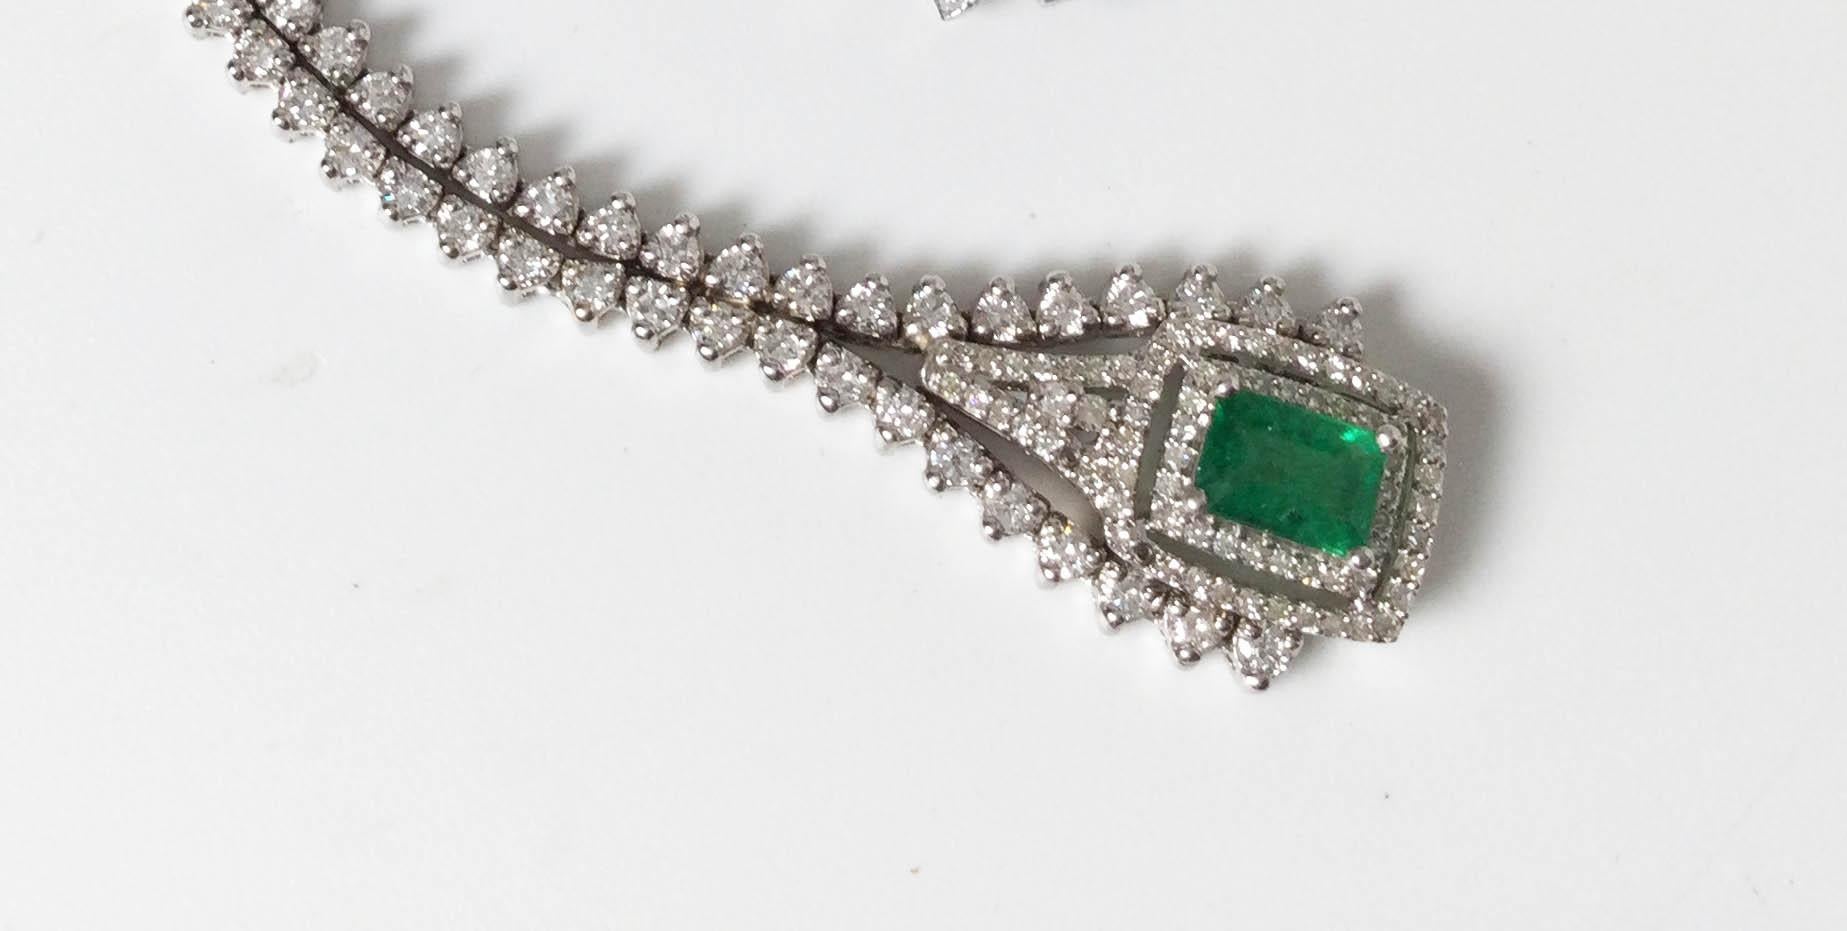 18 karat white gold with natural Columbian emerald and Diamond pendant. 2.12 karat emerald with 4.92 karats of diamonds.